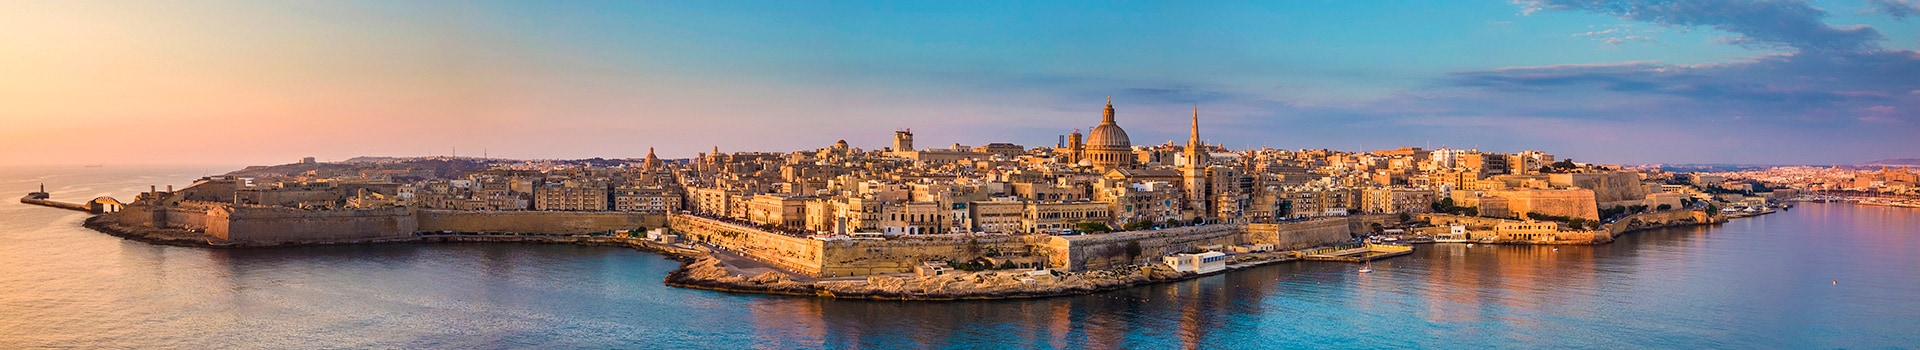 Santander - Malta